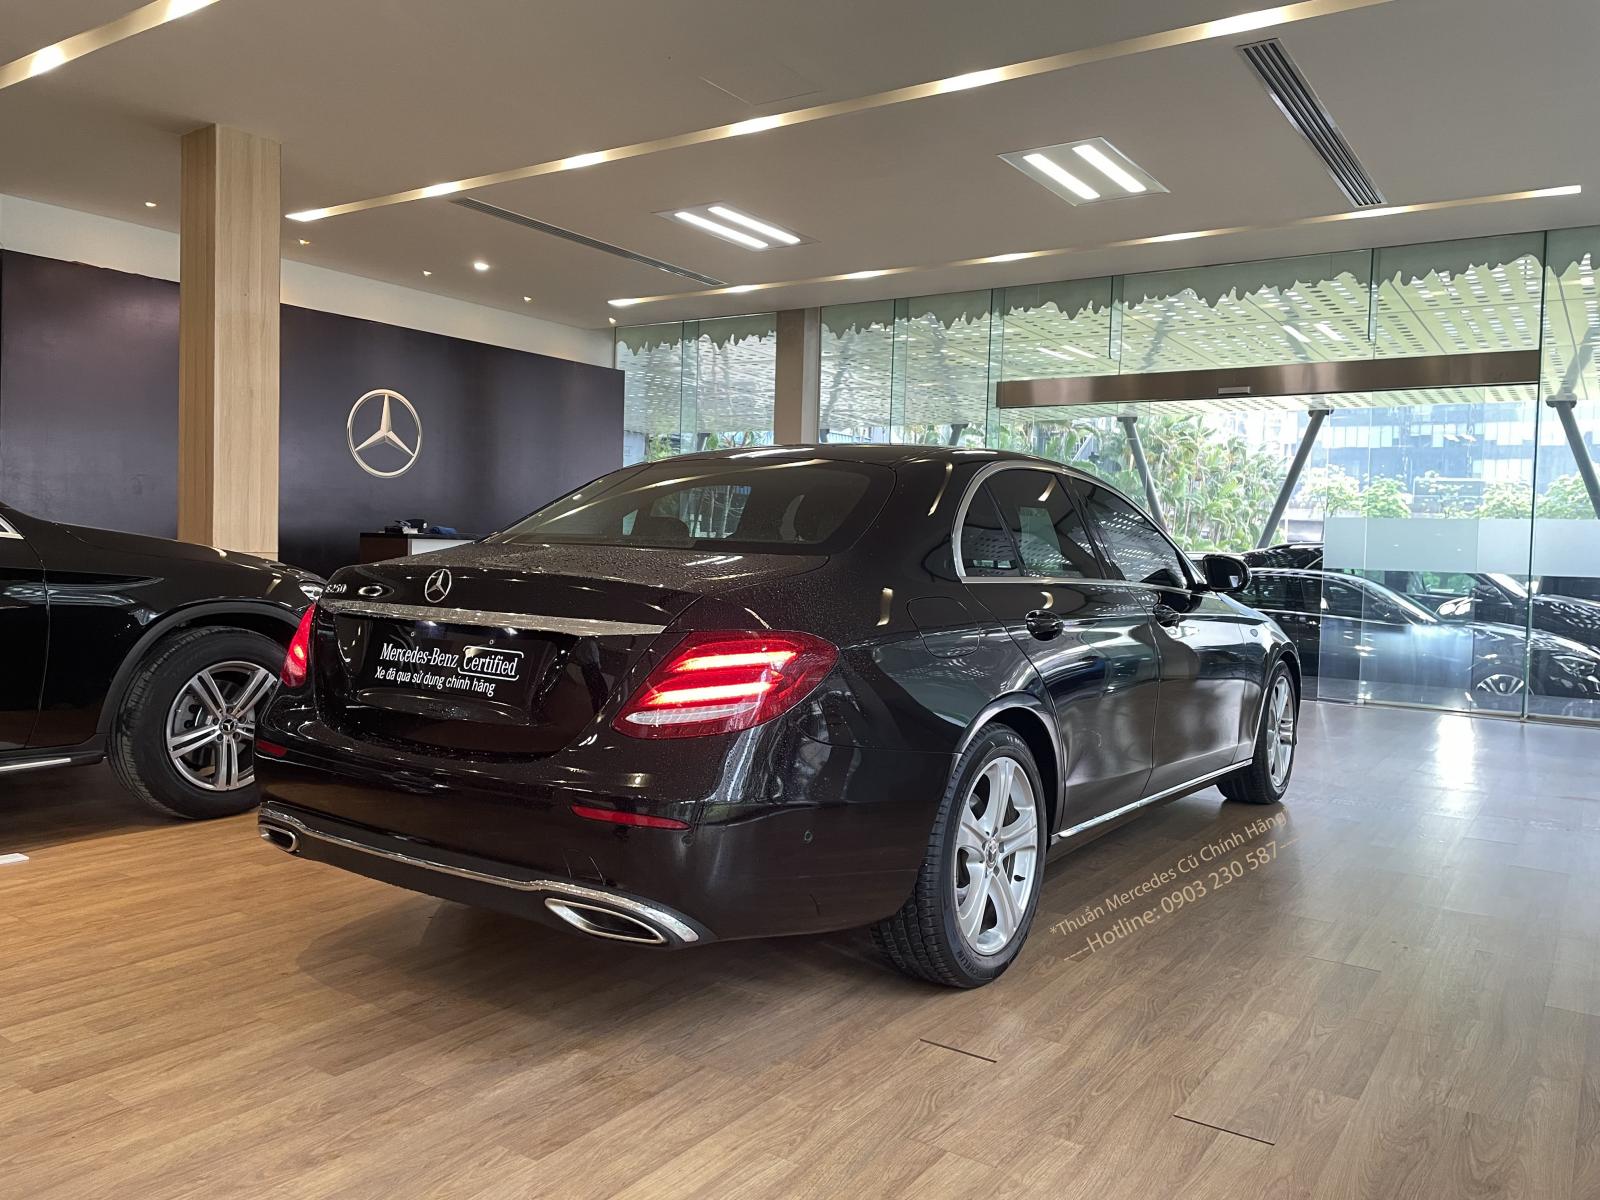 Mercedes-Benz An Du bán xe Đã qua sử dụng Chính hãng E250 2017 Cam kết chất lượng